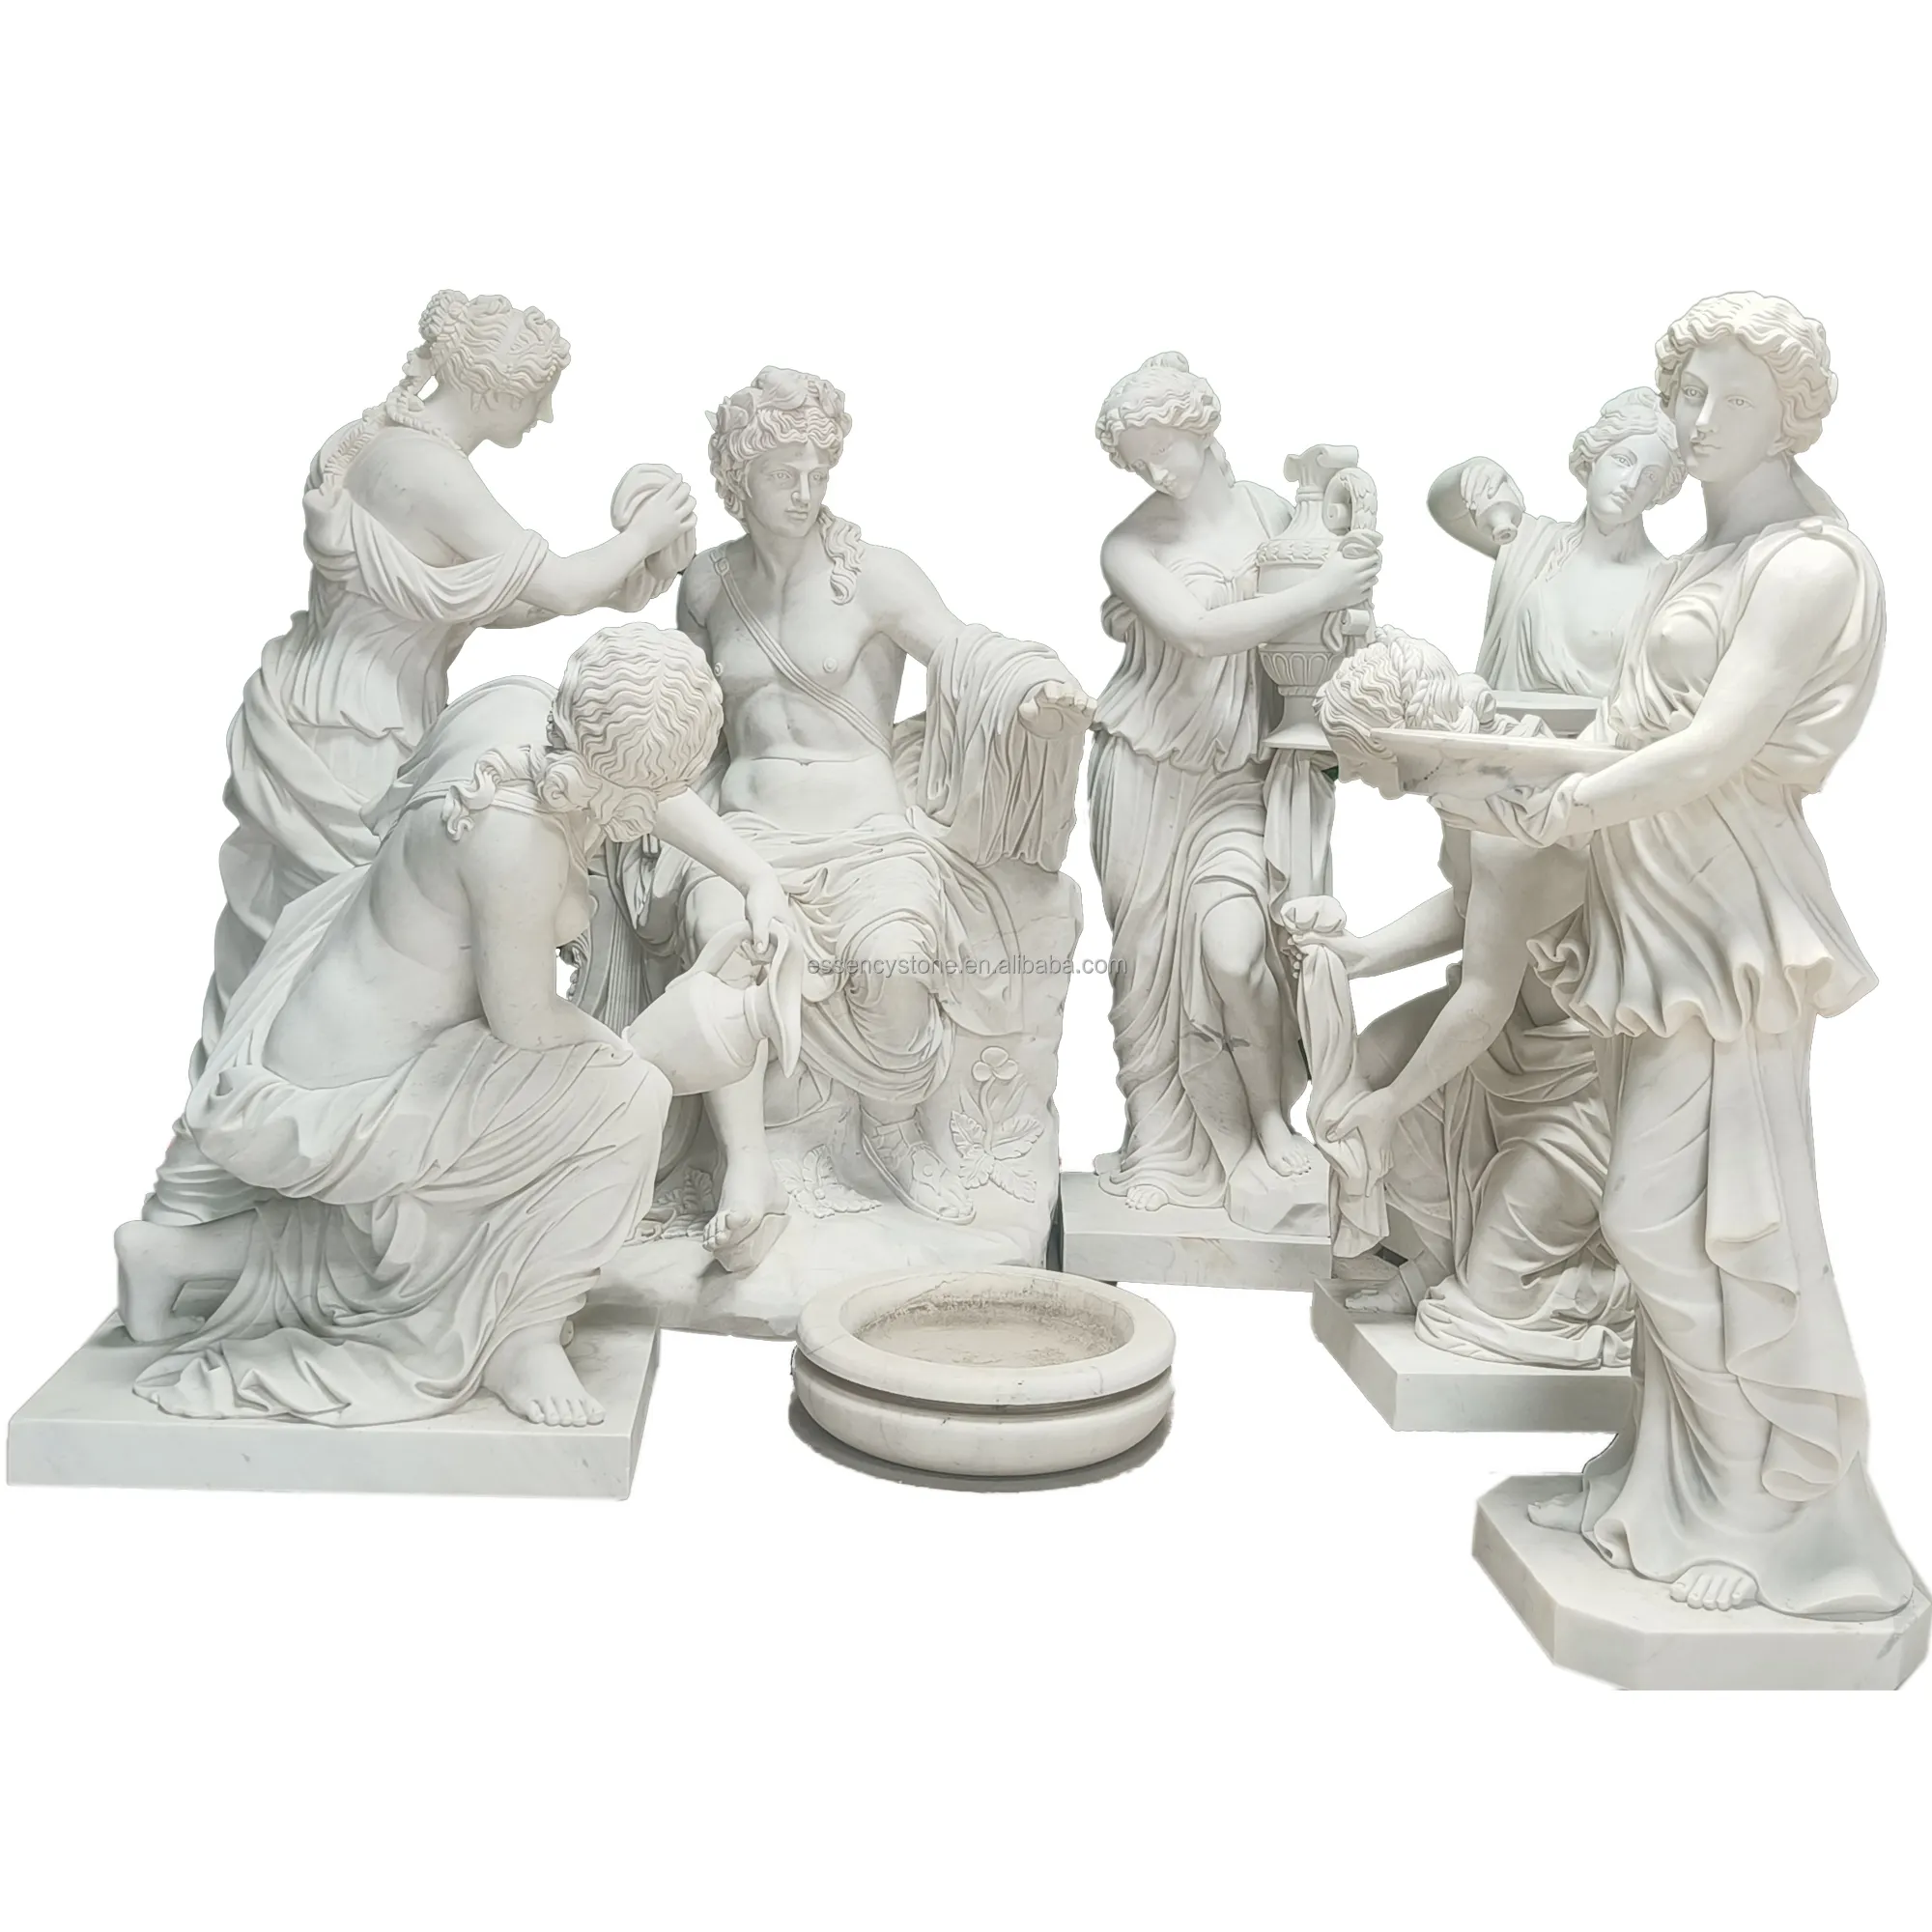 Древние римские статуи, римская женщина мраморная статуя, греческая статуя римская, маленькая Римская Статуя Сад, статуи Давида, Юлия Цезаря